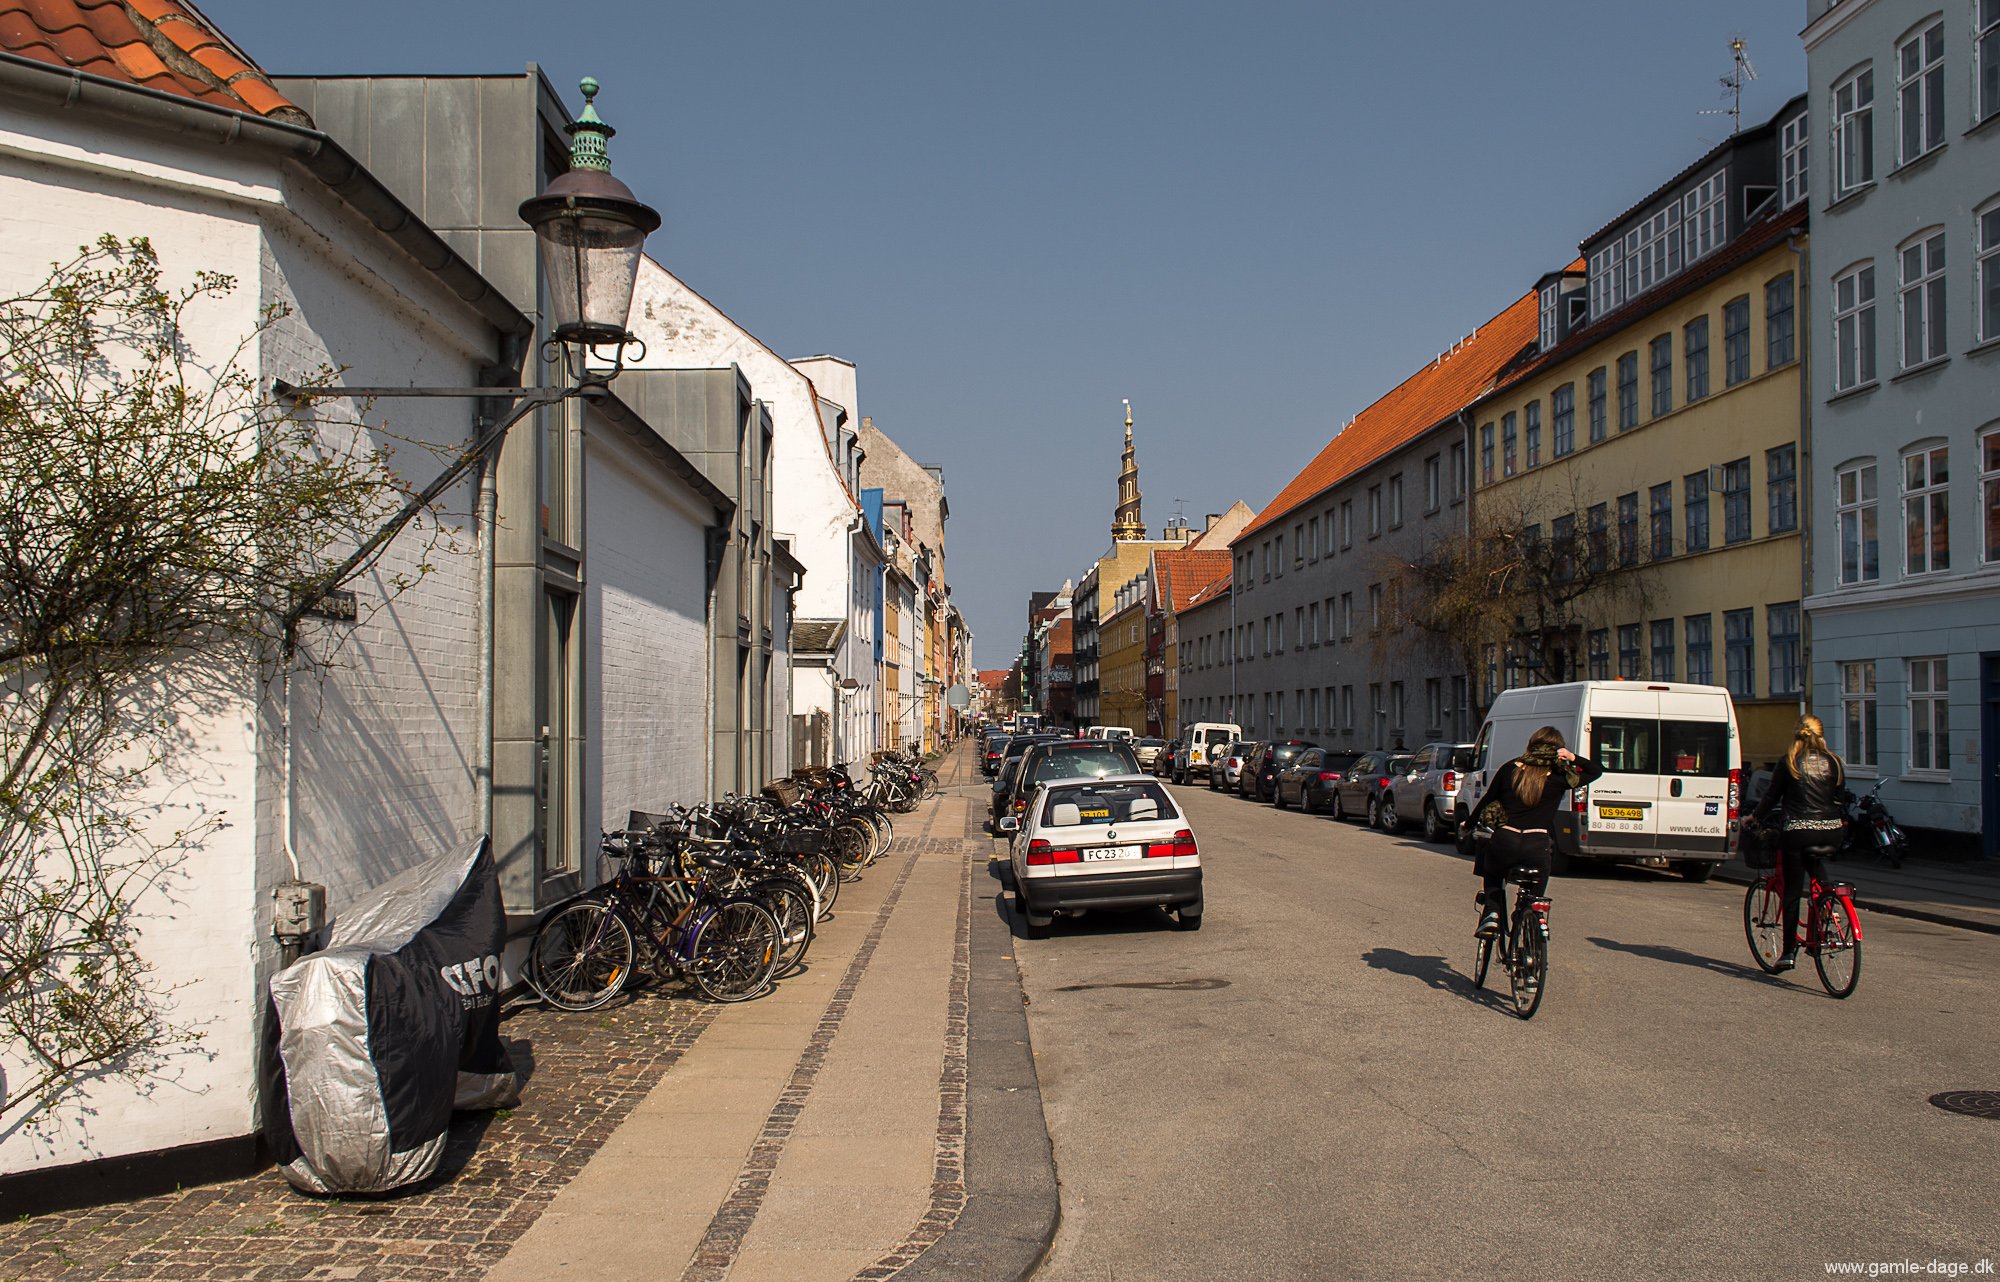 Gader og sidegader på Christianshavn.